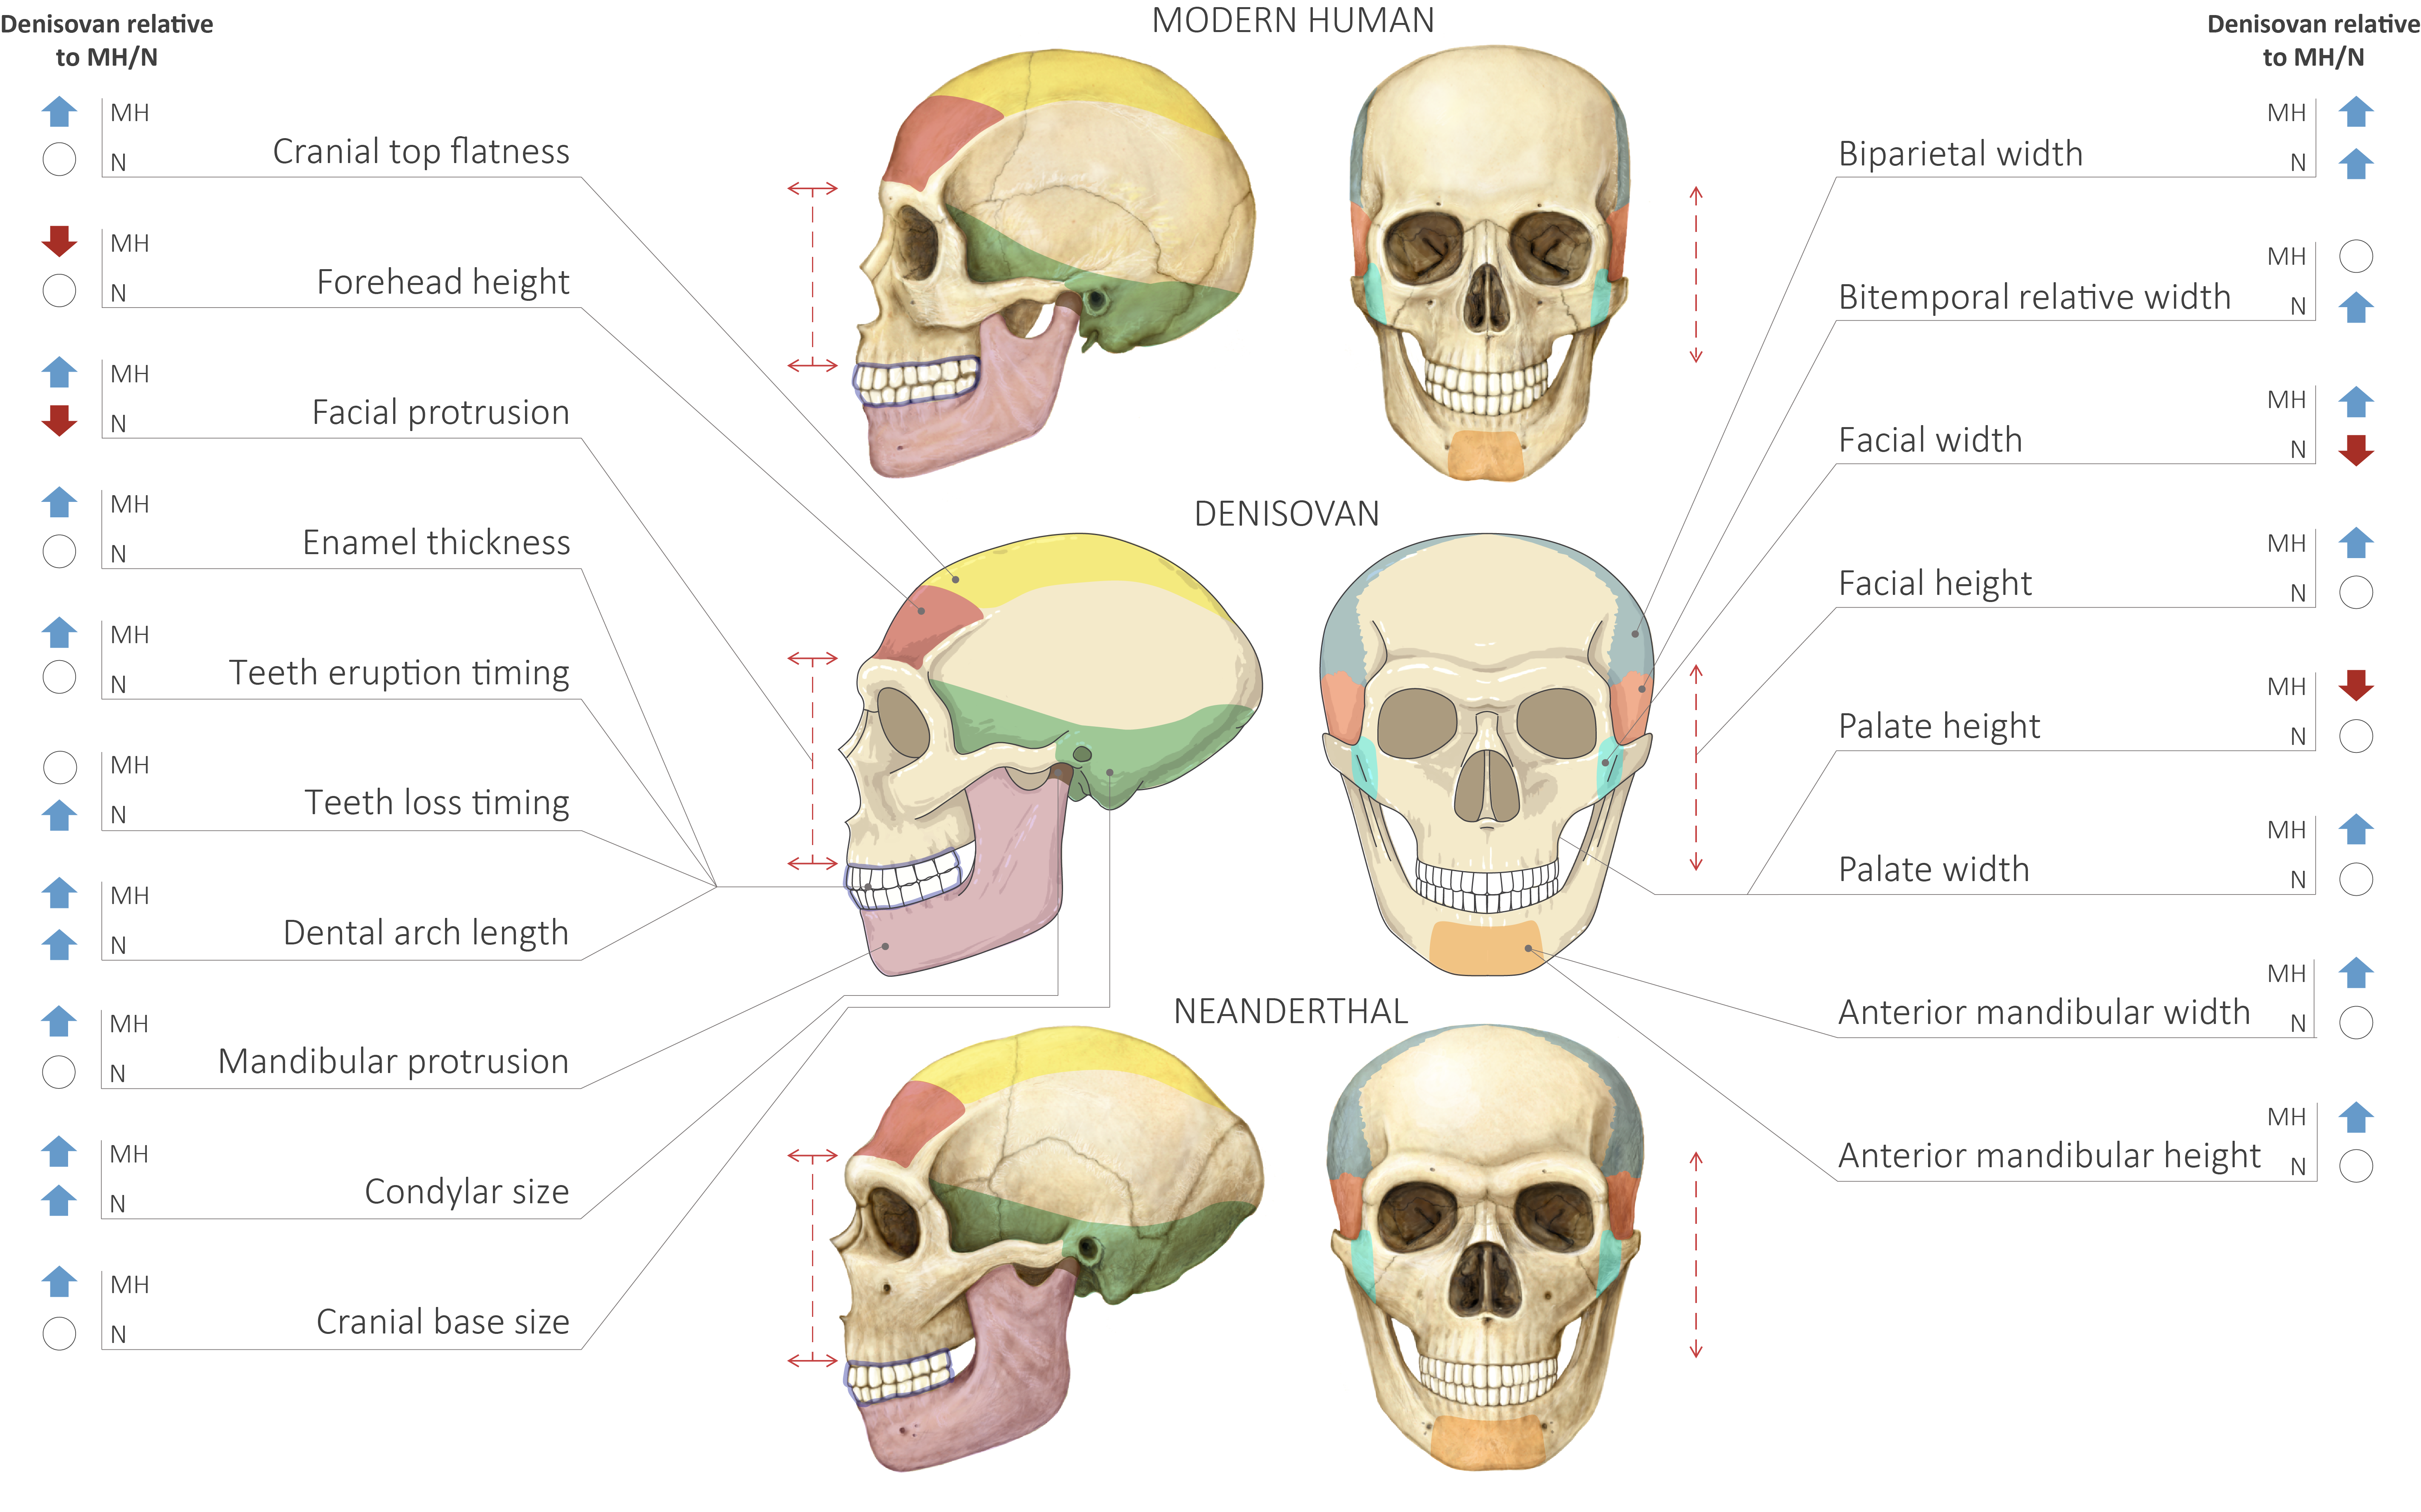 Comparación de cráneos humanos modernos, neandertales y denisovanos.